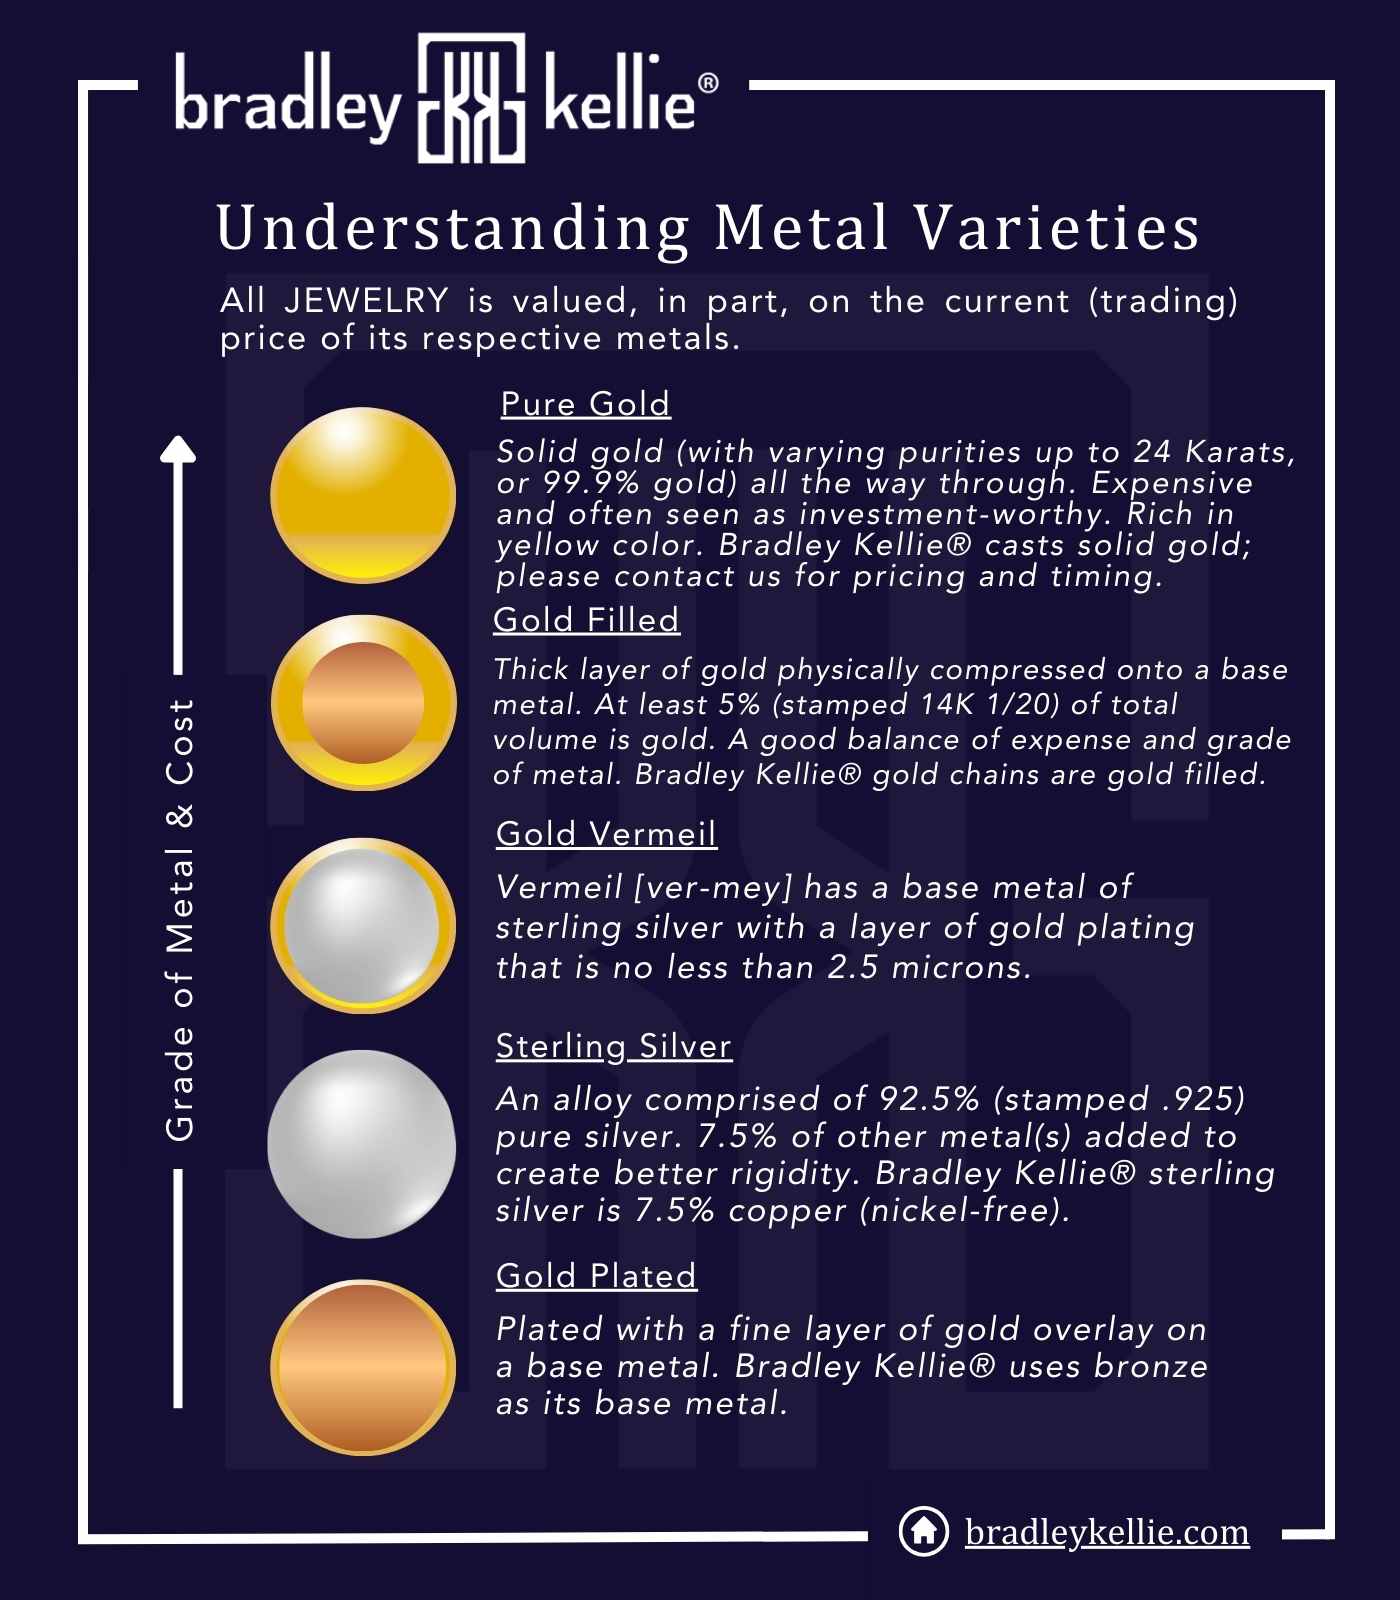 bradley-kellie-understanding-metal-varieties.jpg